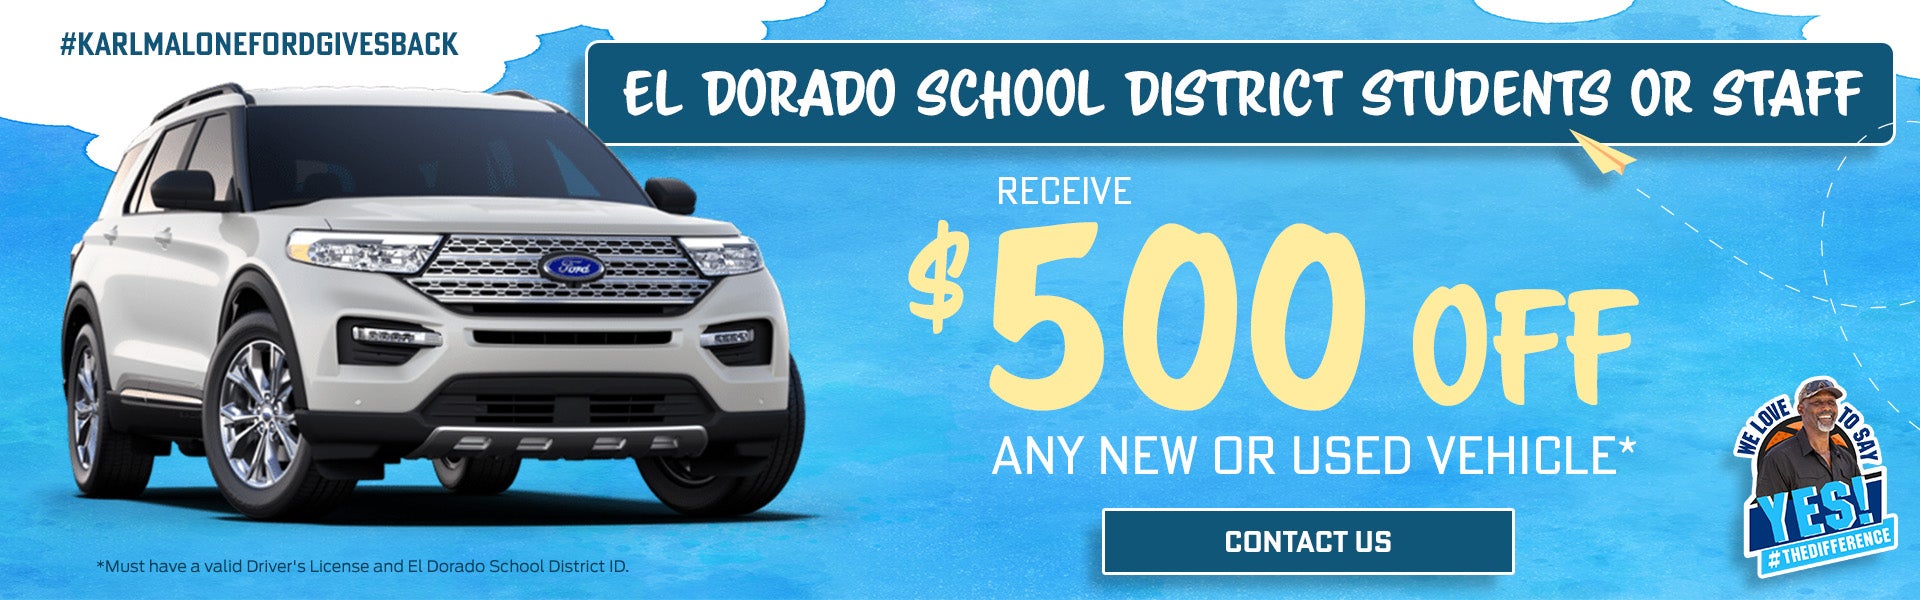 El Dorado School District Offer